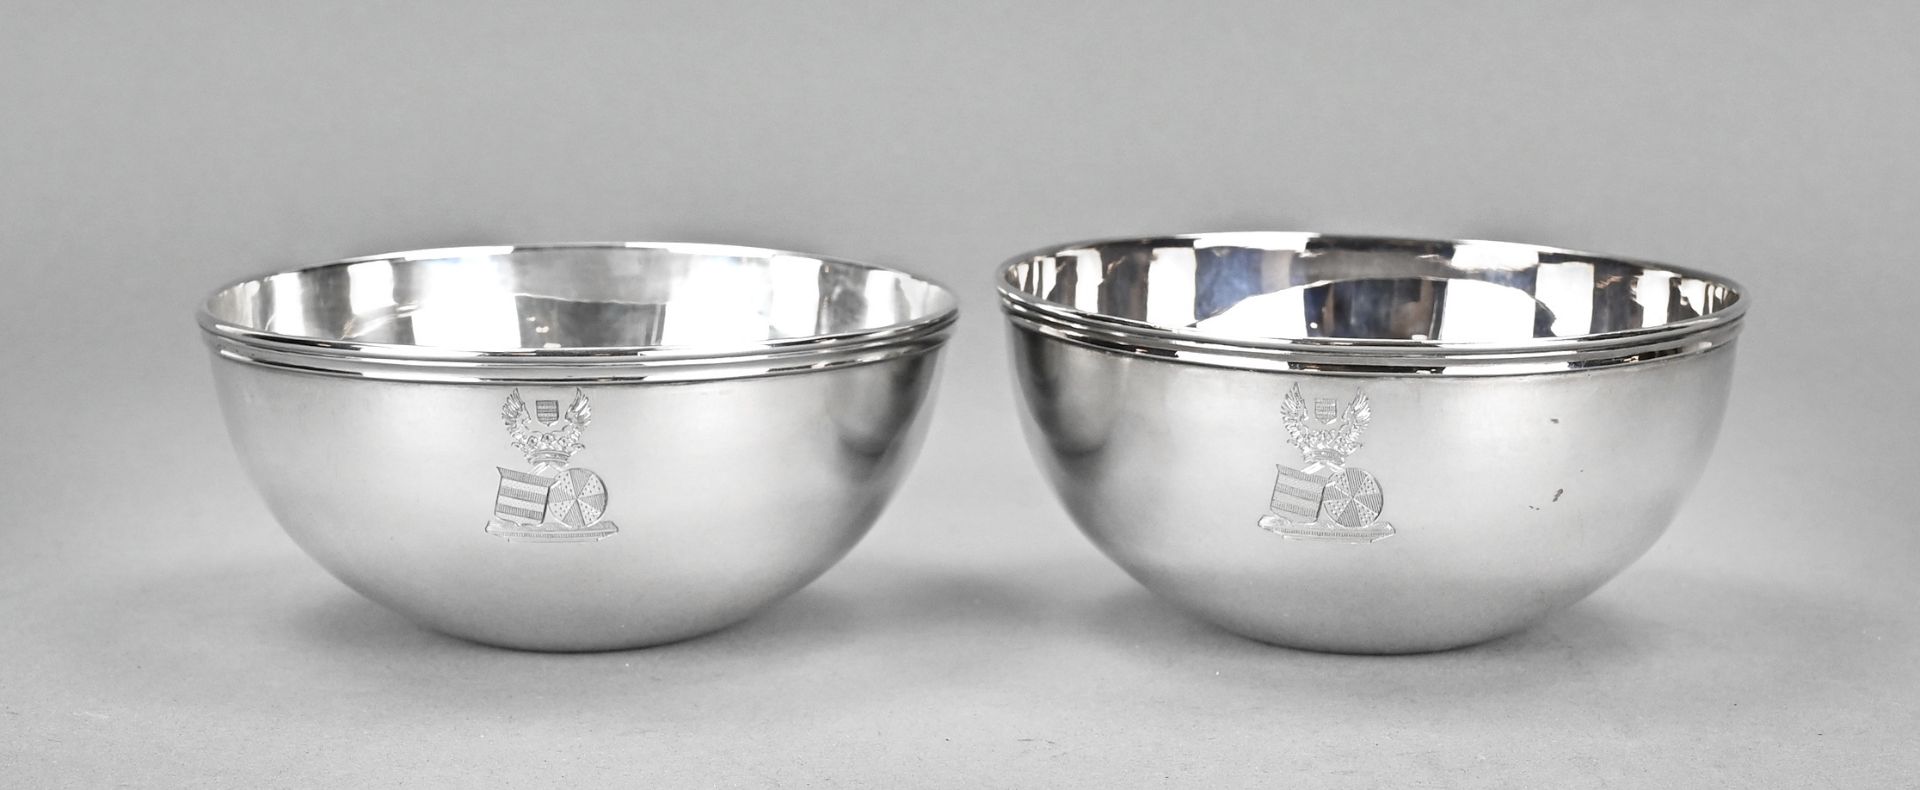 Two silver finger bowls, Bonebakker & Zn